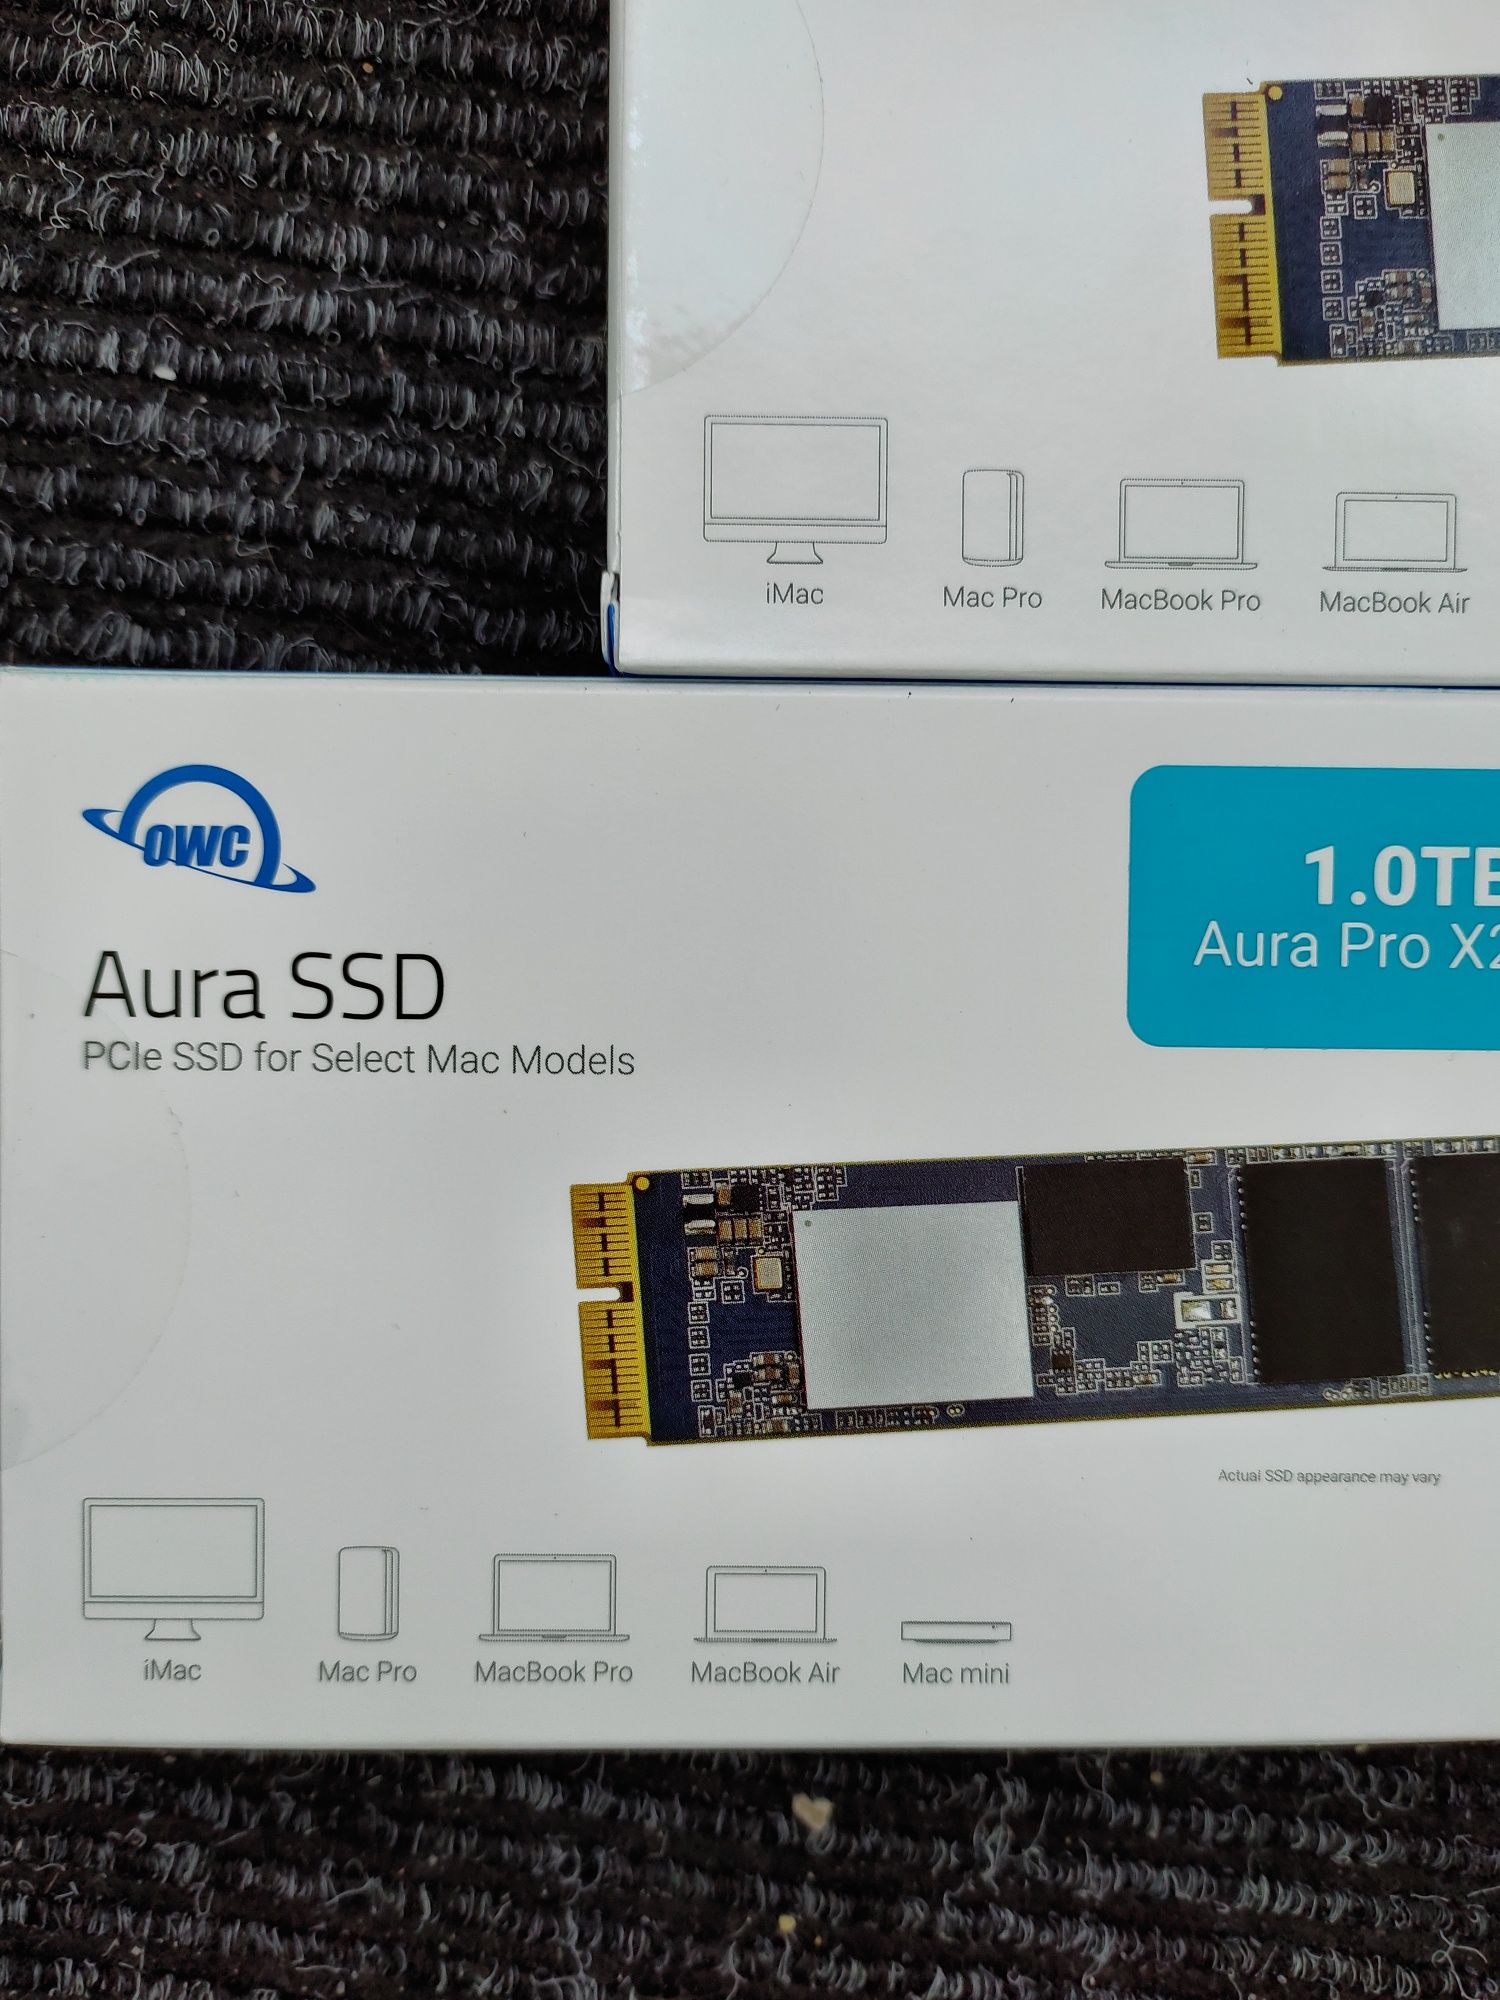 Нові OWC Aura Pro X2 SSD 1TB Mac Pro

Запломбовані